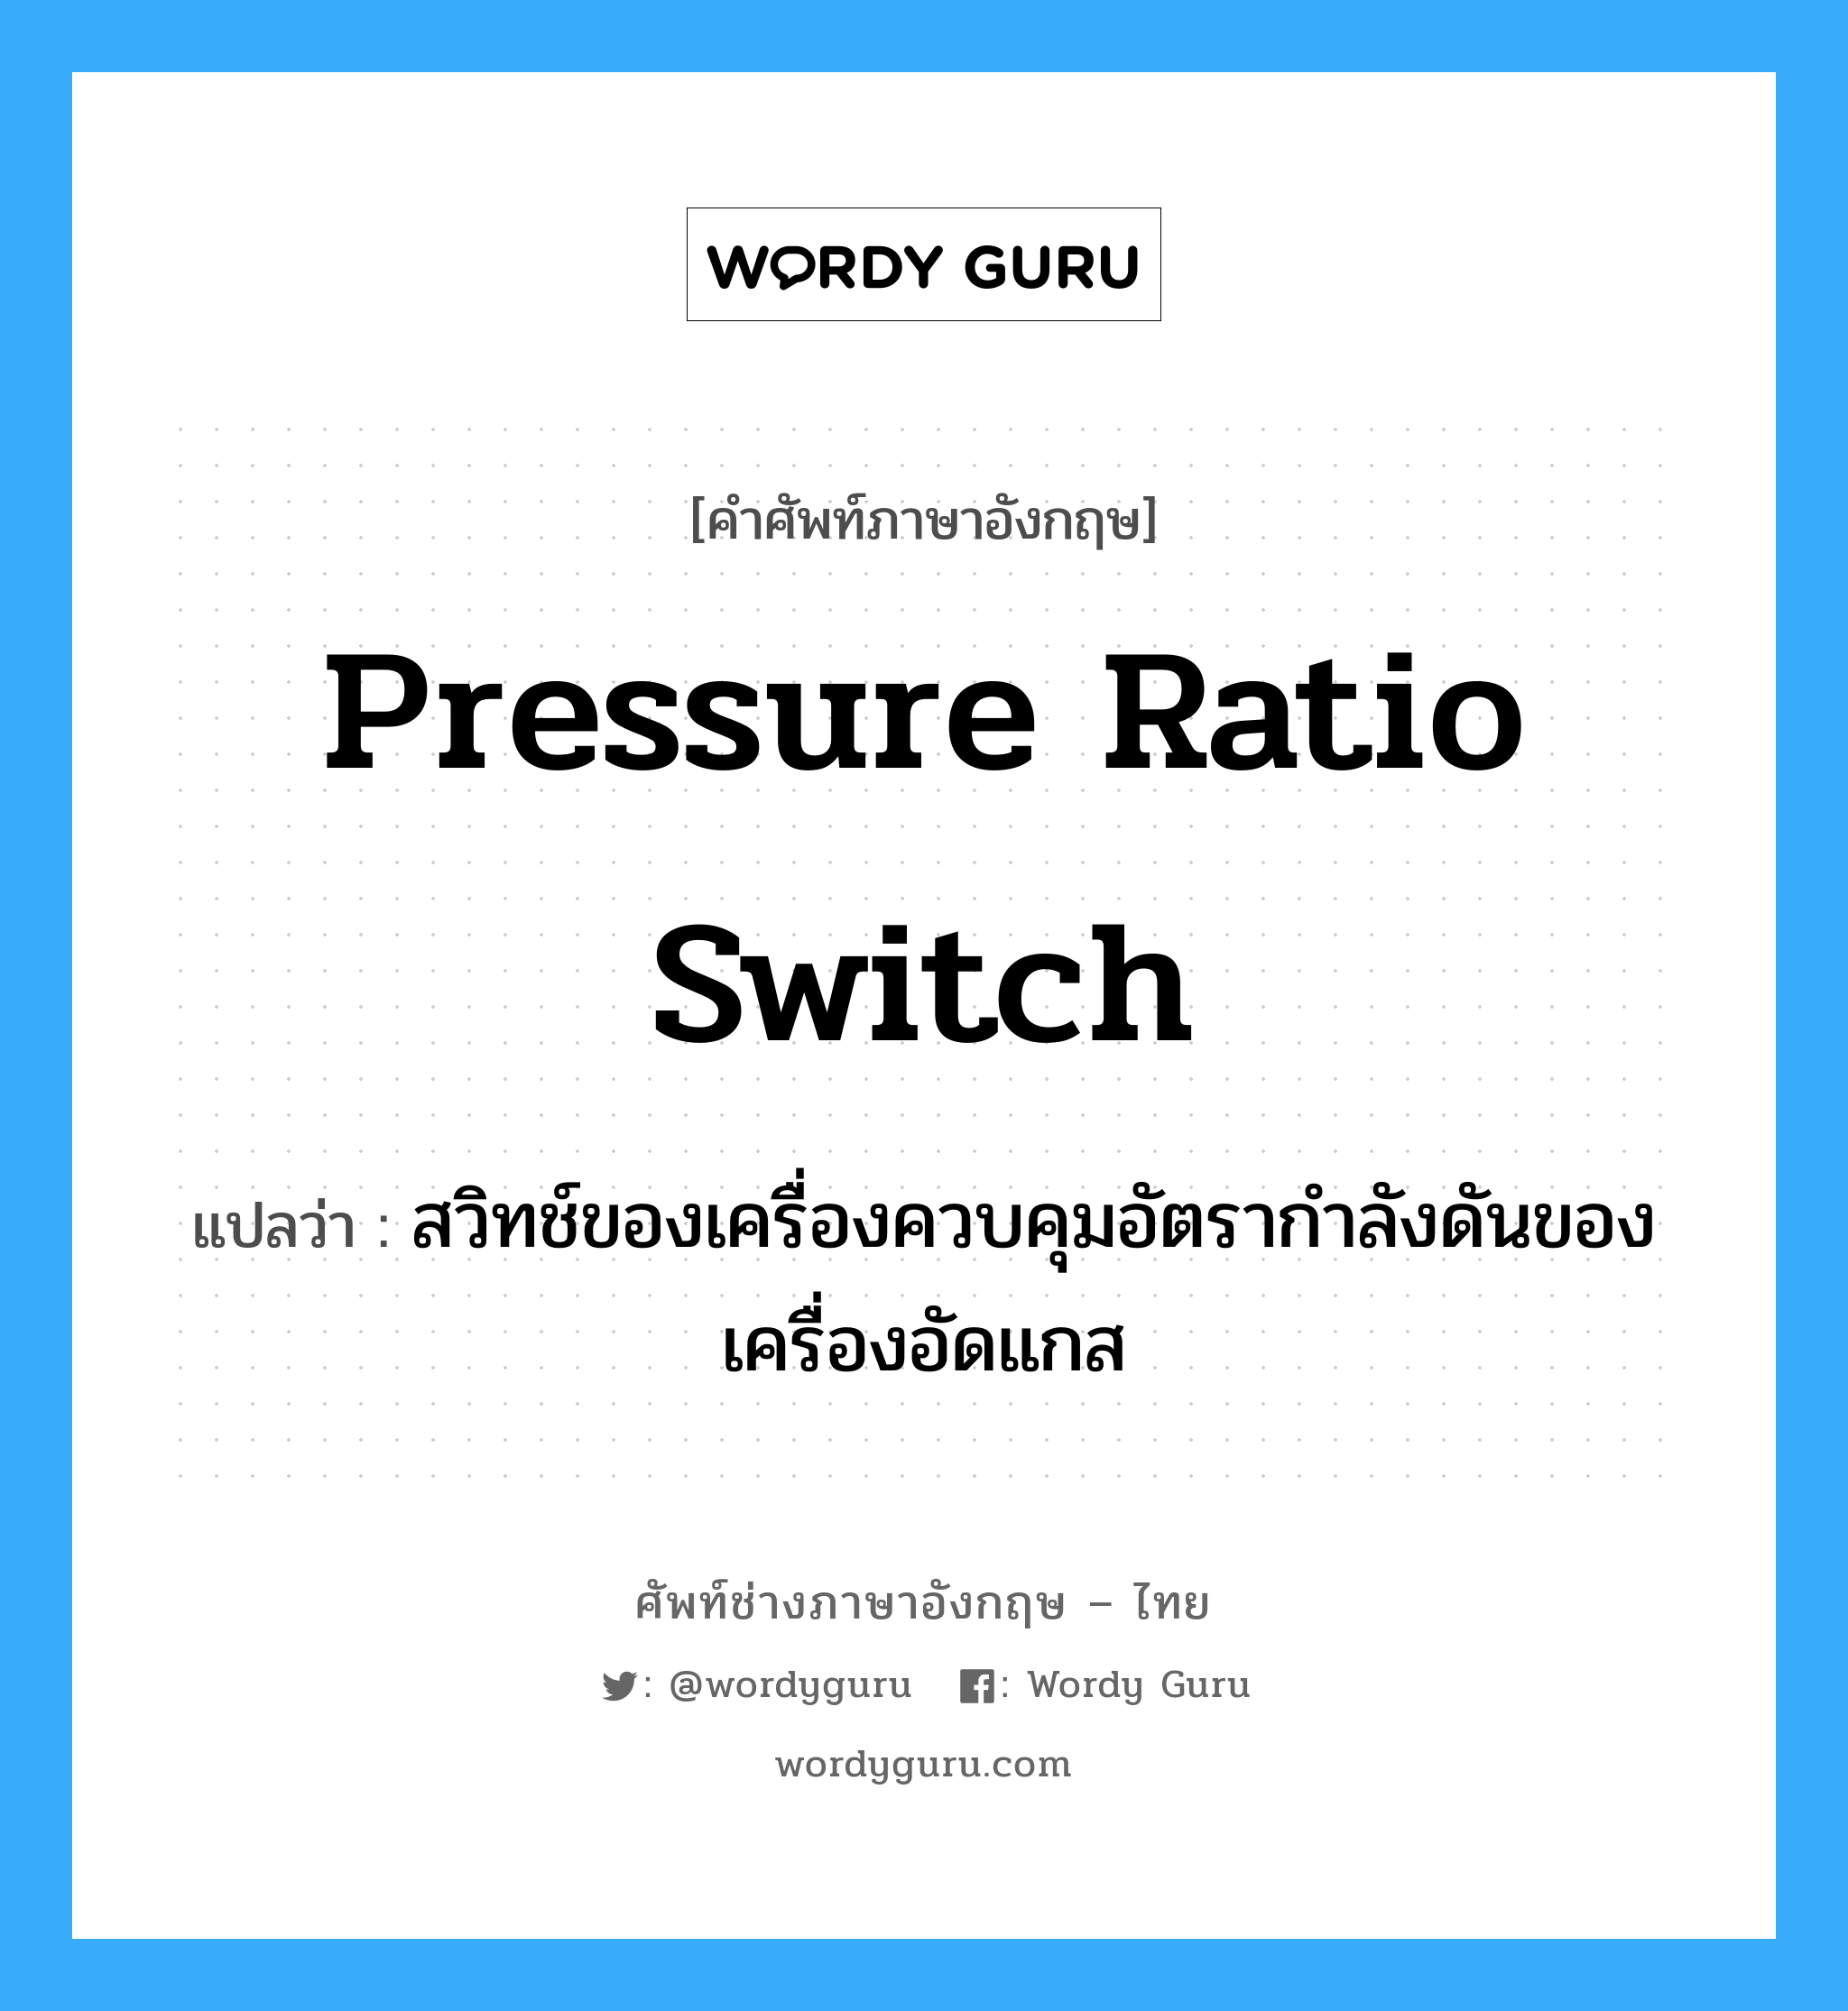 pressure ratio switch แปลว่า?, คำศัพท์ช่างภาษาอังกฤษ - ไทย pressure ratio switch คำศัพท์ภาษาอังกฤษ pressure ratio switch แปลว่า สวิทช์ของเครื่องควบคุมอัตรากำลังดันของเครื่องอัดแกส